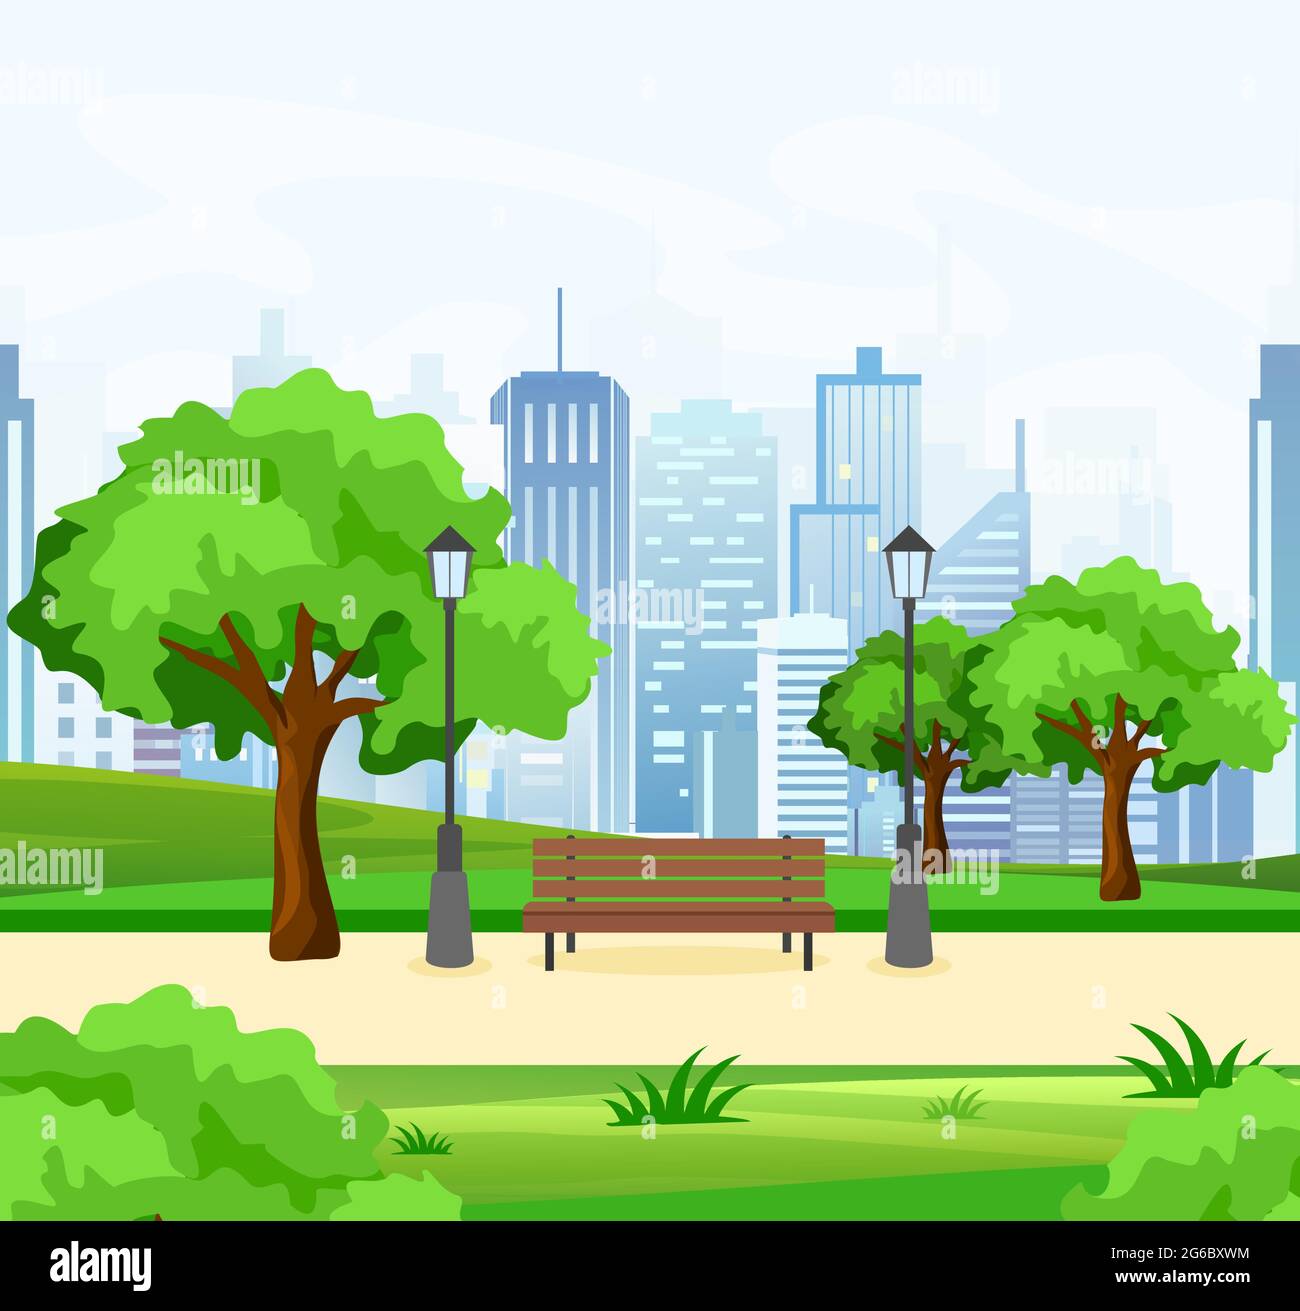 Ilustración vectorial del hermoso parque público de la ciudad con árboles y banco, luces y vista moderna de la ciudad en el fondo en estilo plano. Ilustración del Vector